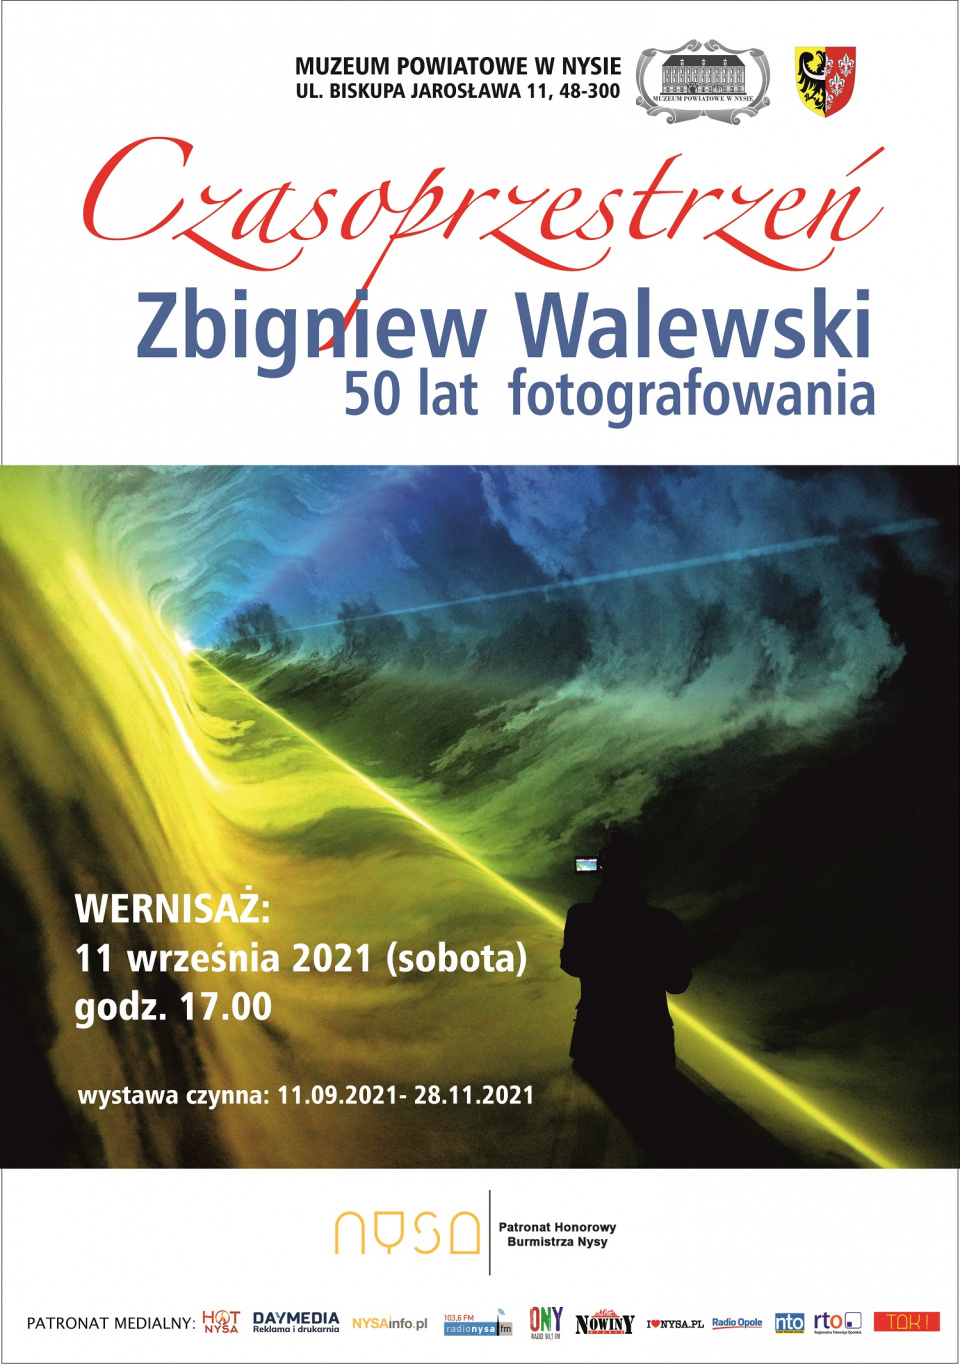 Wystawa fotograficzna Zbigniewa Walewskiego - plakat [materiały nadesłane przez Muzeum Powiatowe w Nysie]